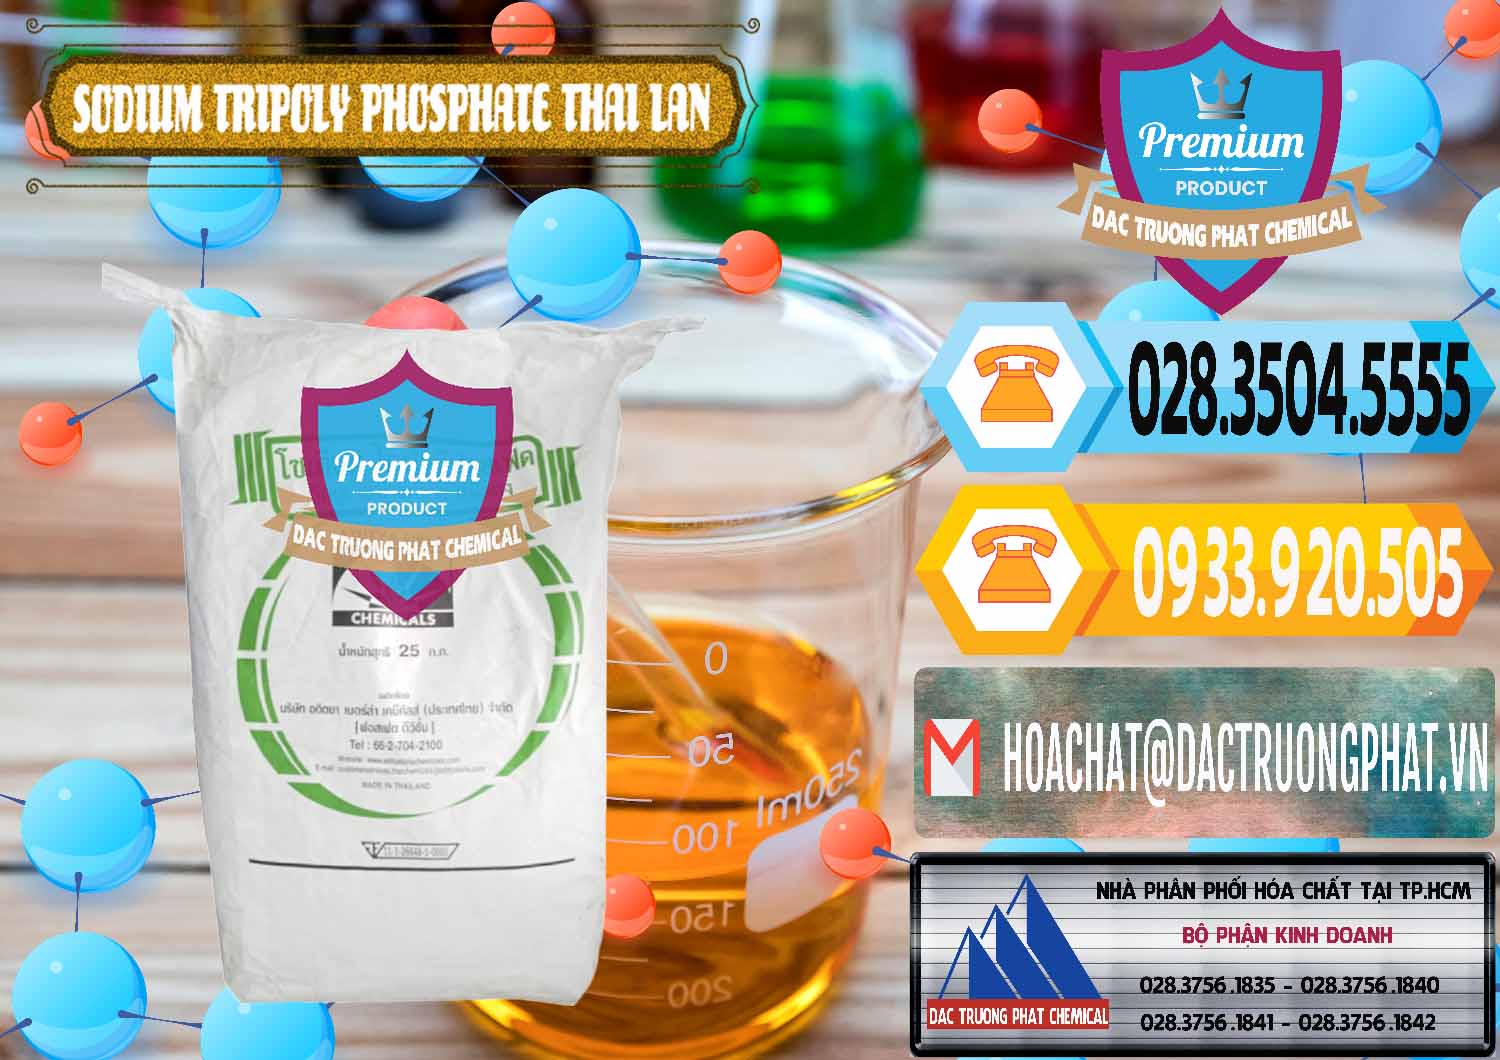 Đơn vị chuyên bán ( cung cấp ) Sodium Tripoly Phosphate - STPP Aditya Birla Grasim Thái Lan Thailand - 0421 - Công ty chuyên nhập khẩu _ phân phối hóa chất tại TP.HCM - hoachattayrua.net